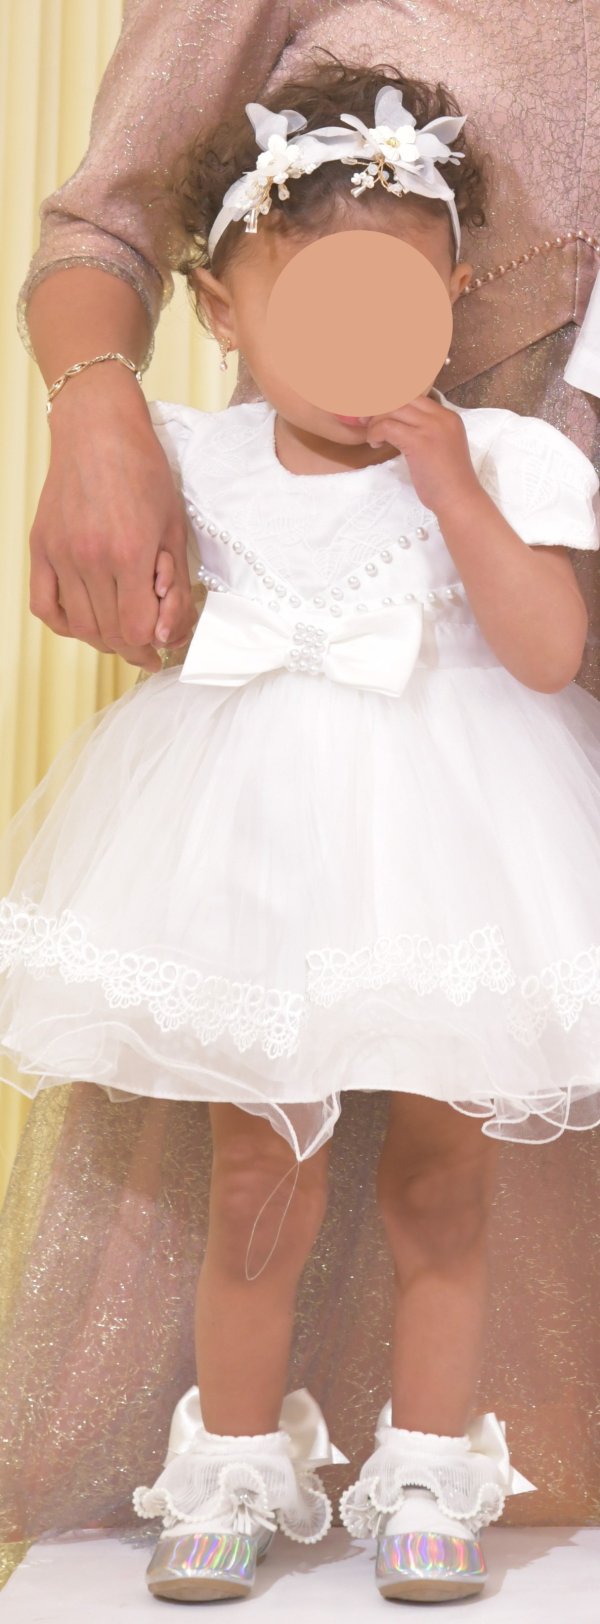 שמלה מהממת לחתונה לתינוקת בת שנה